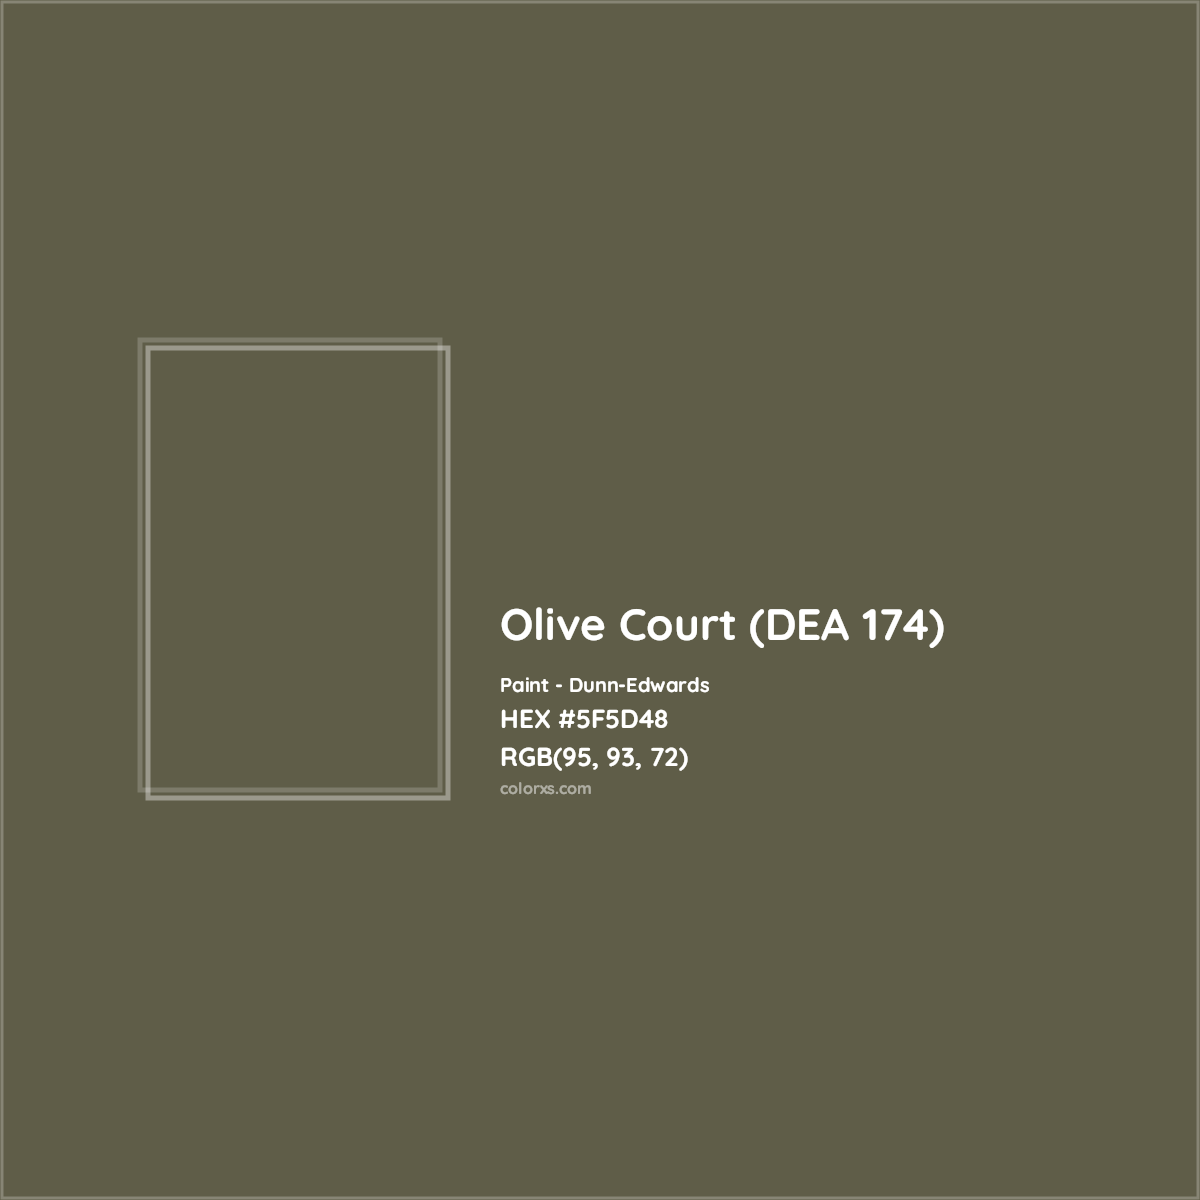 HEX #5F5D48 Olive Court (DEA 174) Paint Dunn-Edwards - Color Code